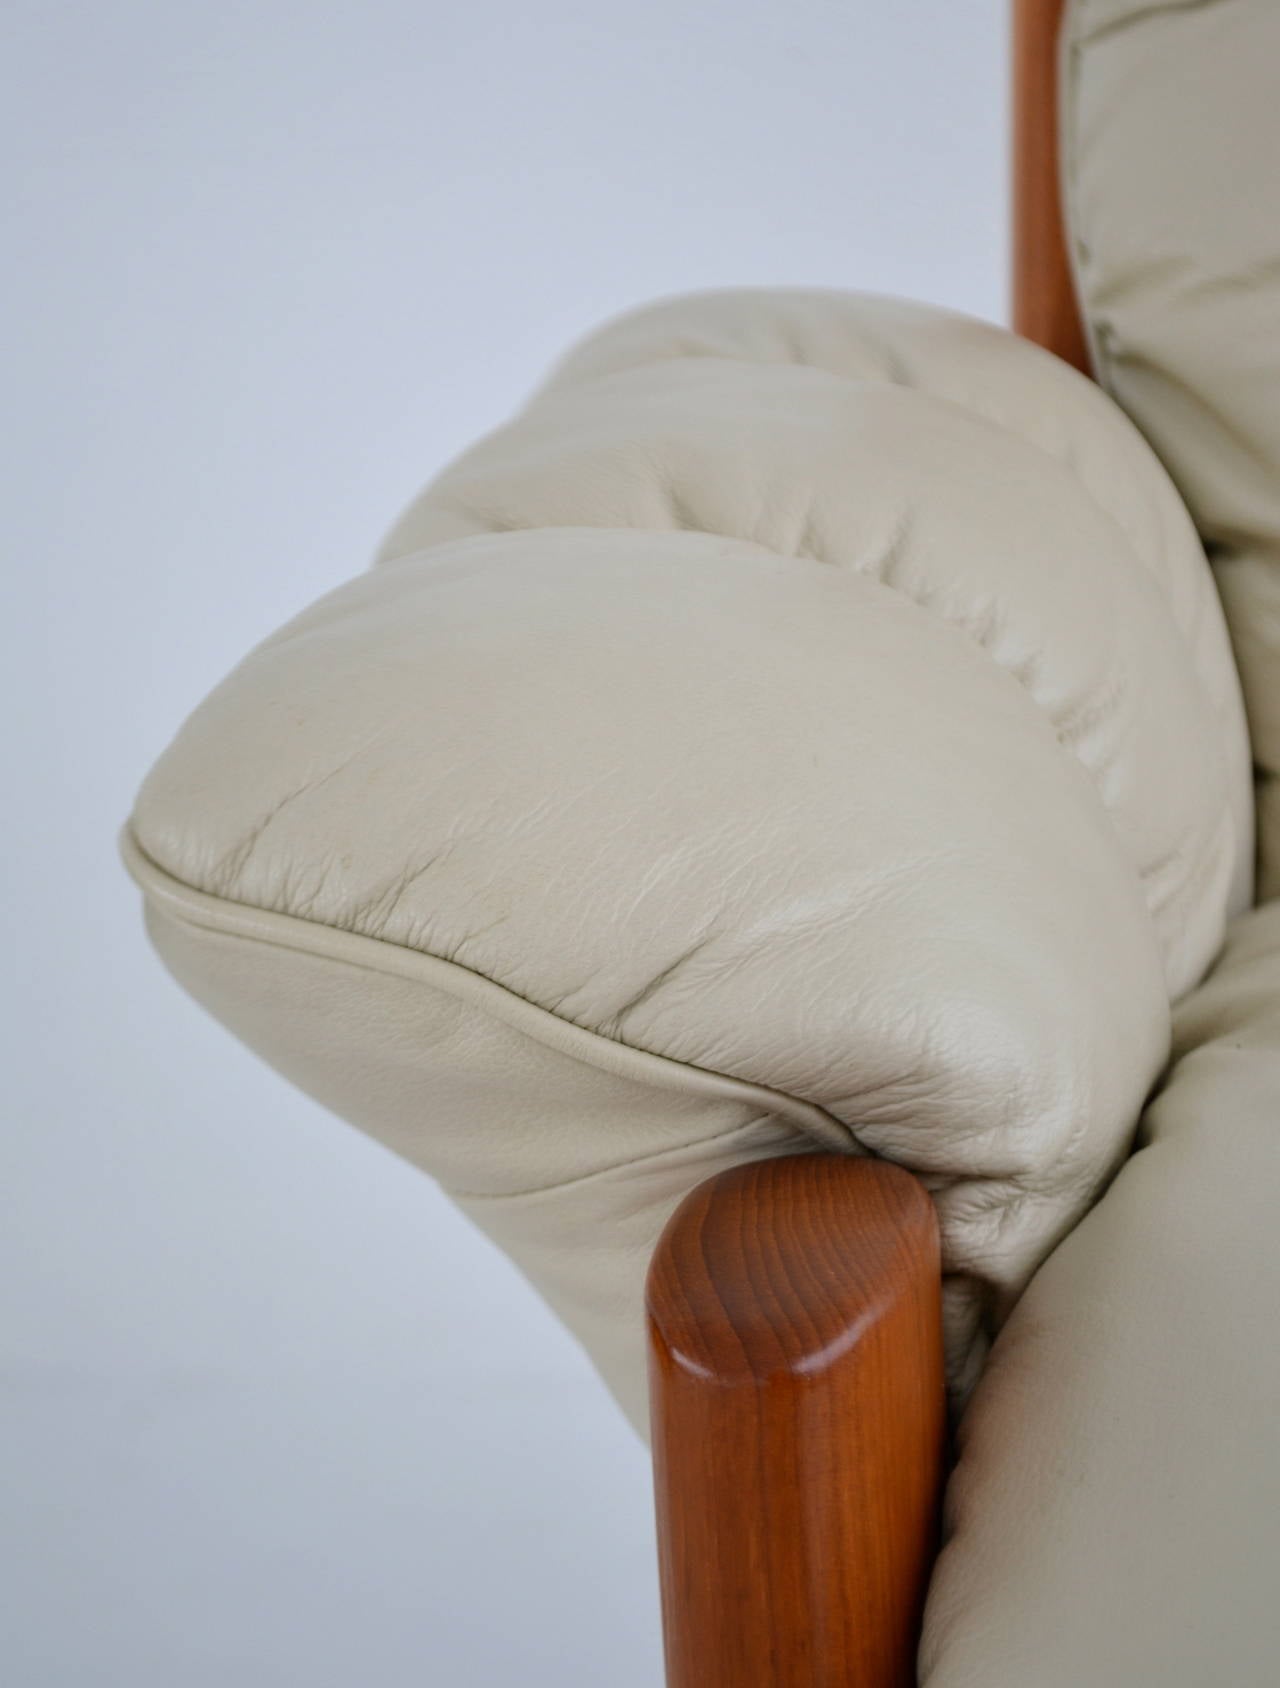 Postmodern Leather and Teak Club Chair by J. E. Ekornes 1